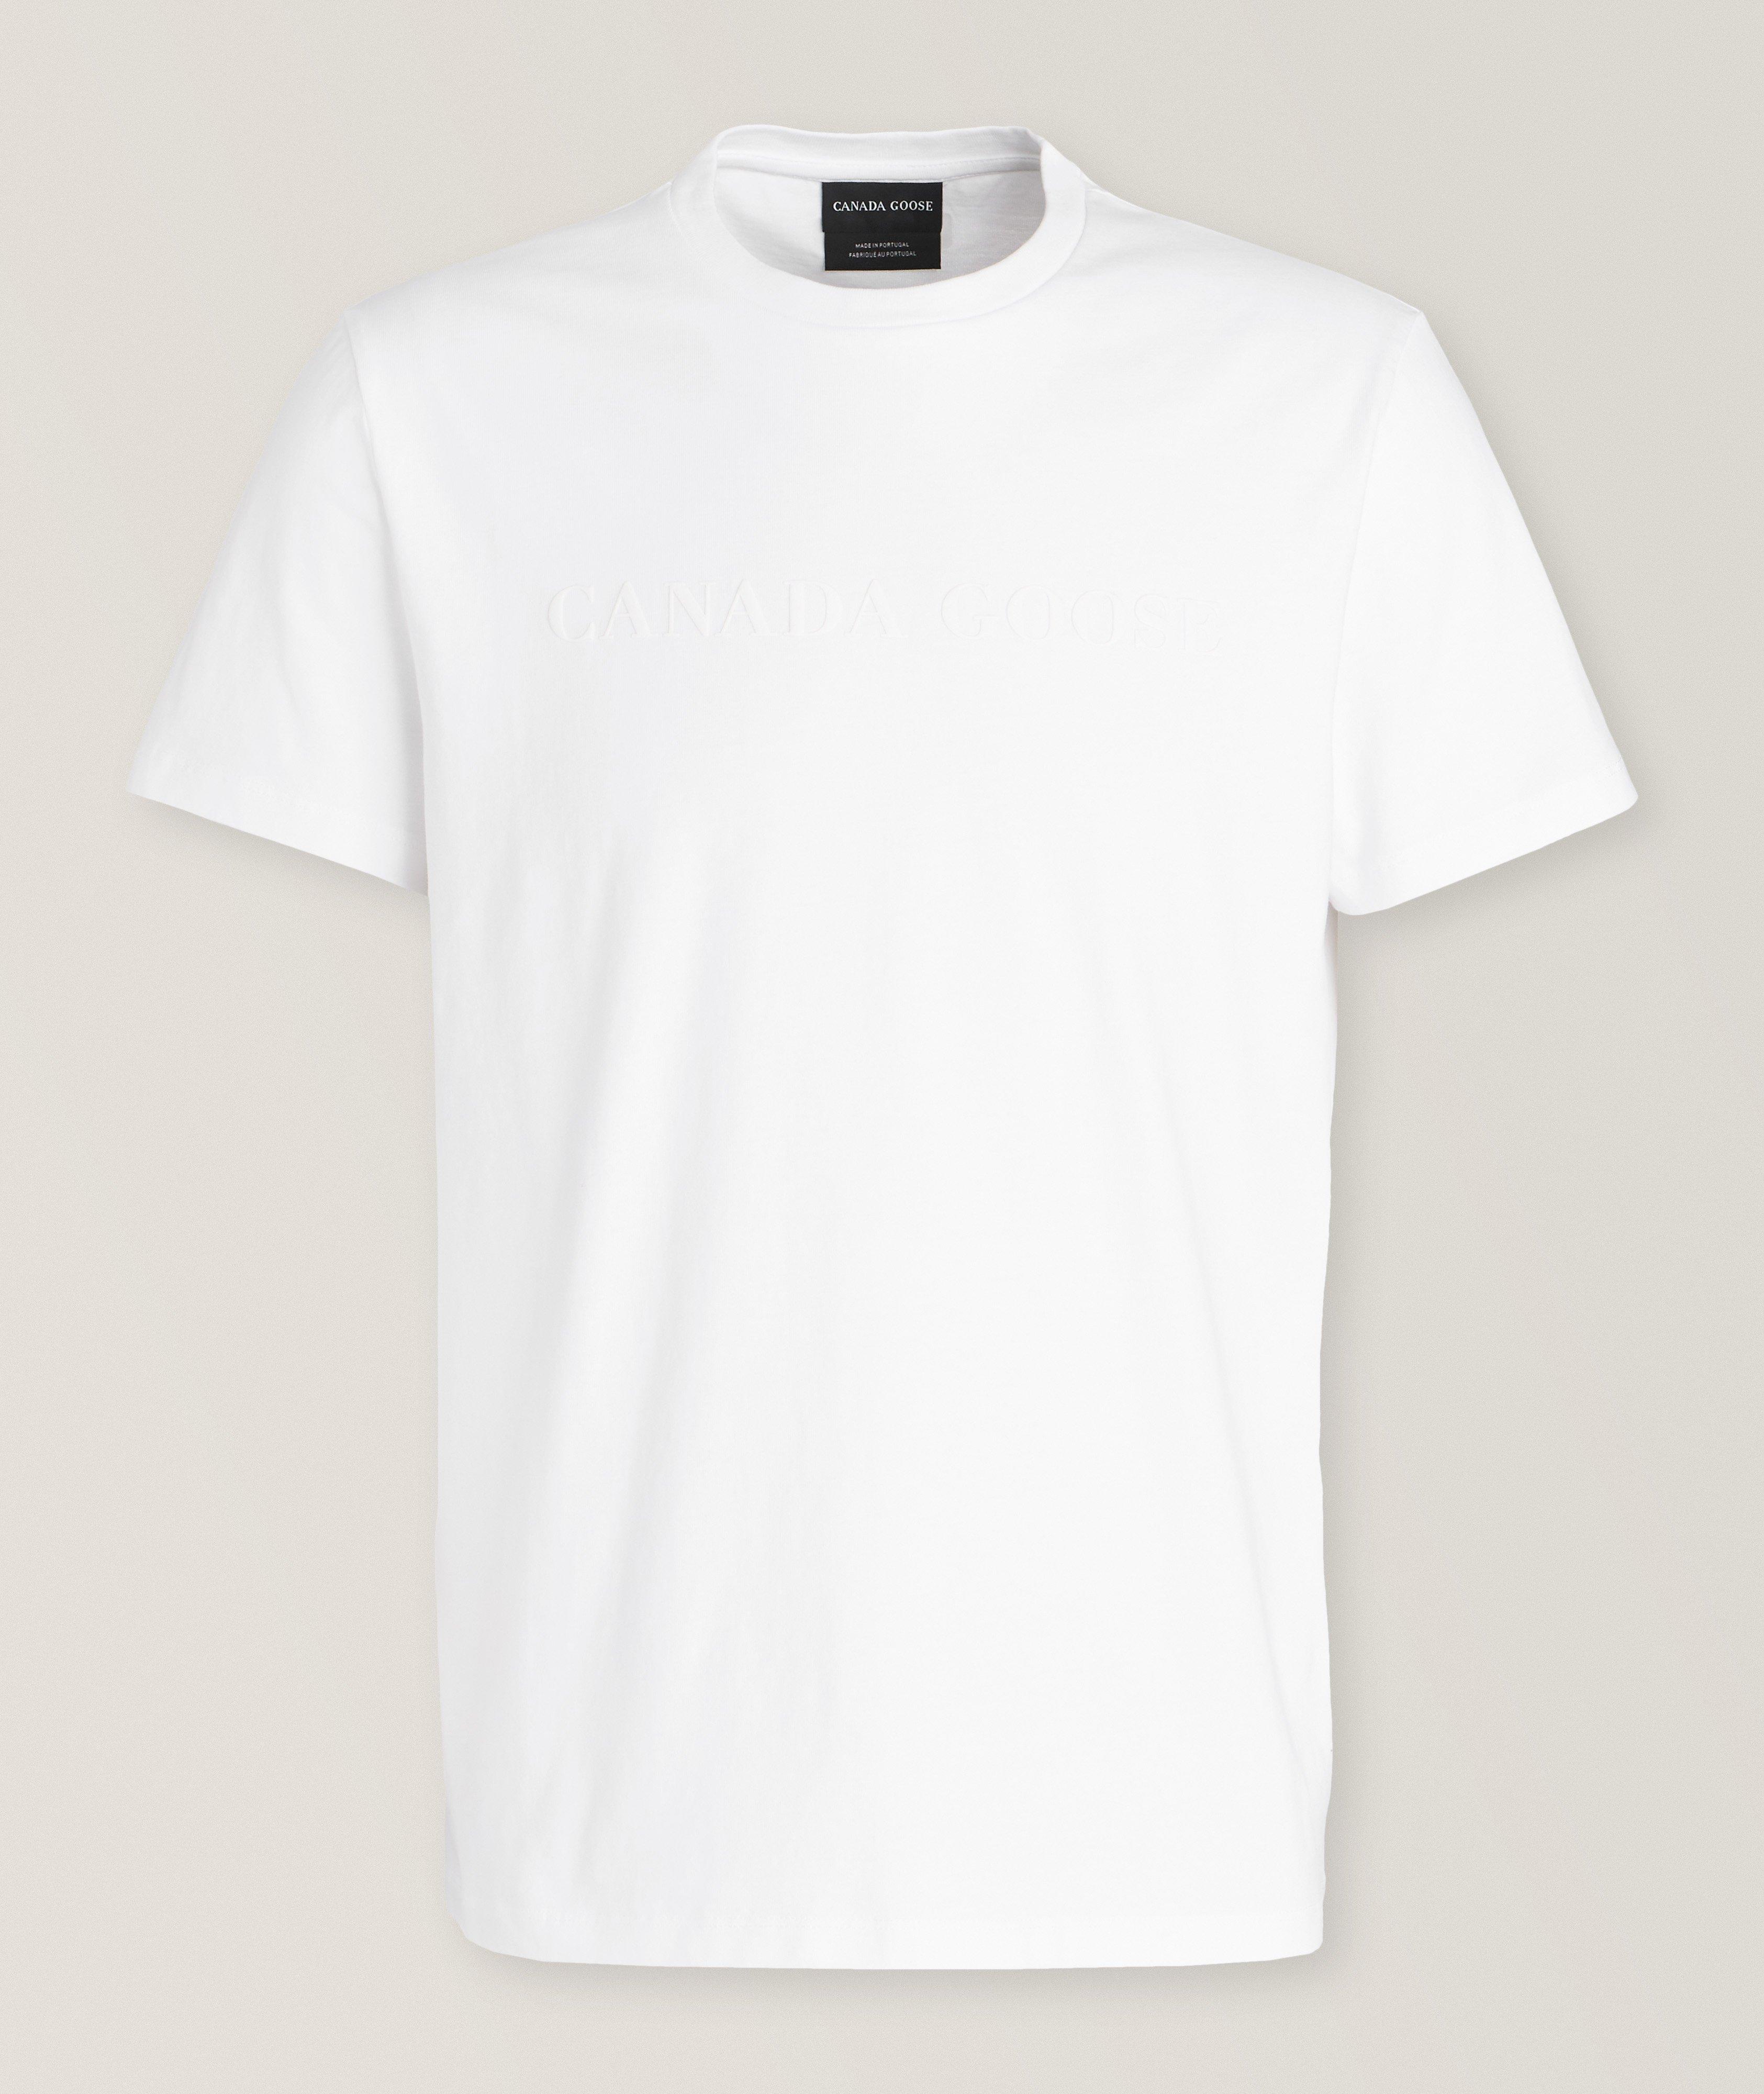 T-shirt Emerson en coton avec logo caoutchouté image 0